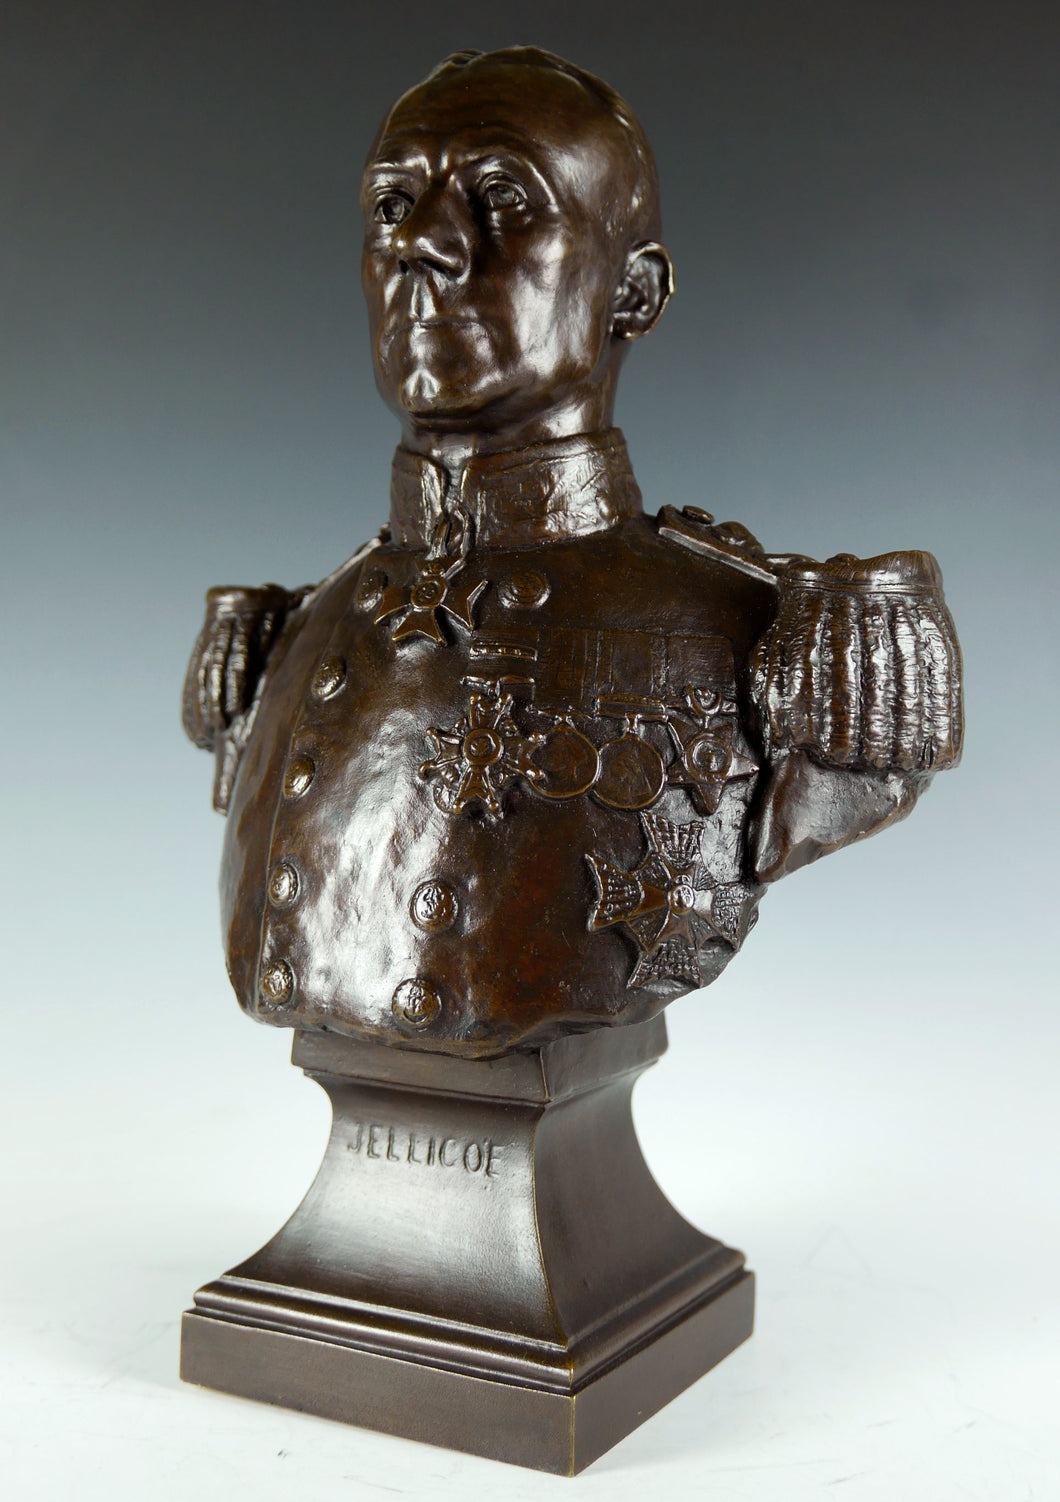 Portrait Bust of Rear-Admiral Sir John Jellicoe, K.C.V.O., C.B., R.N., 1910